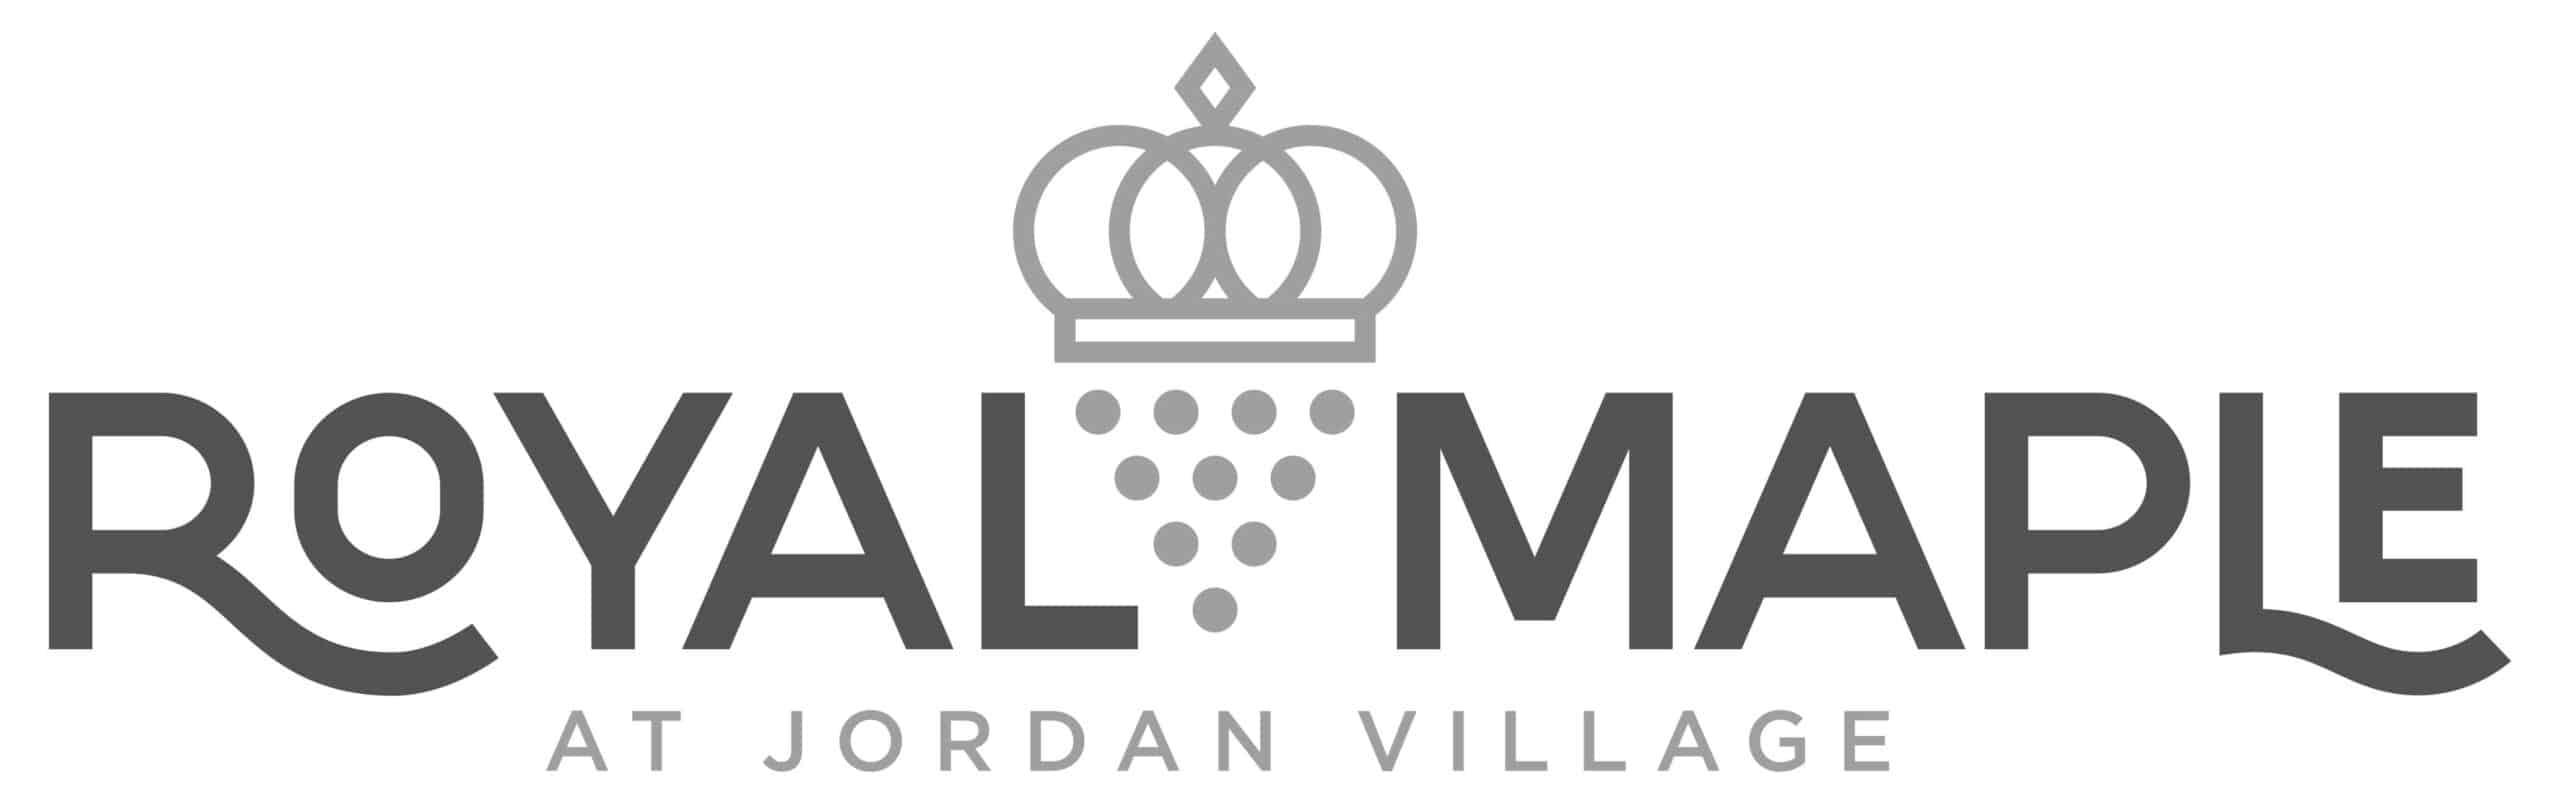 Royal Maple at Jordan Village Logo